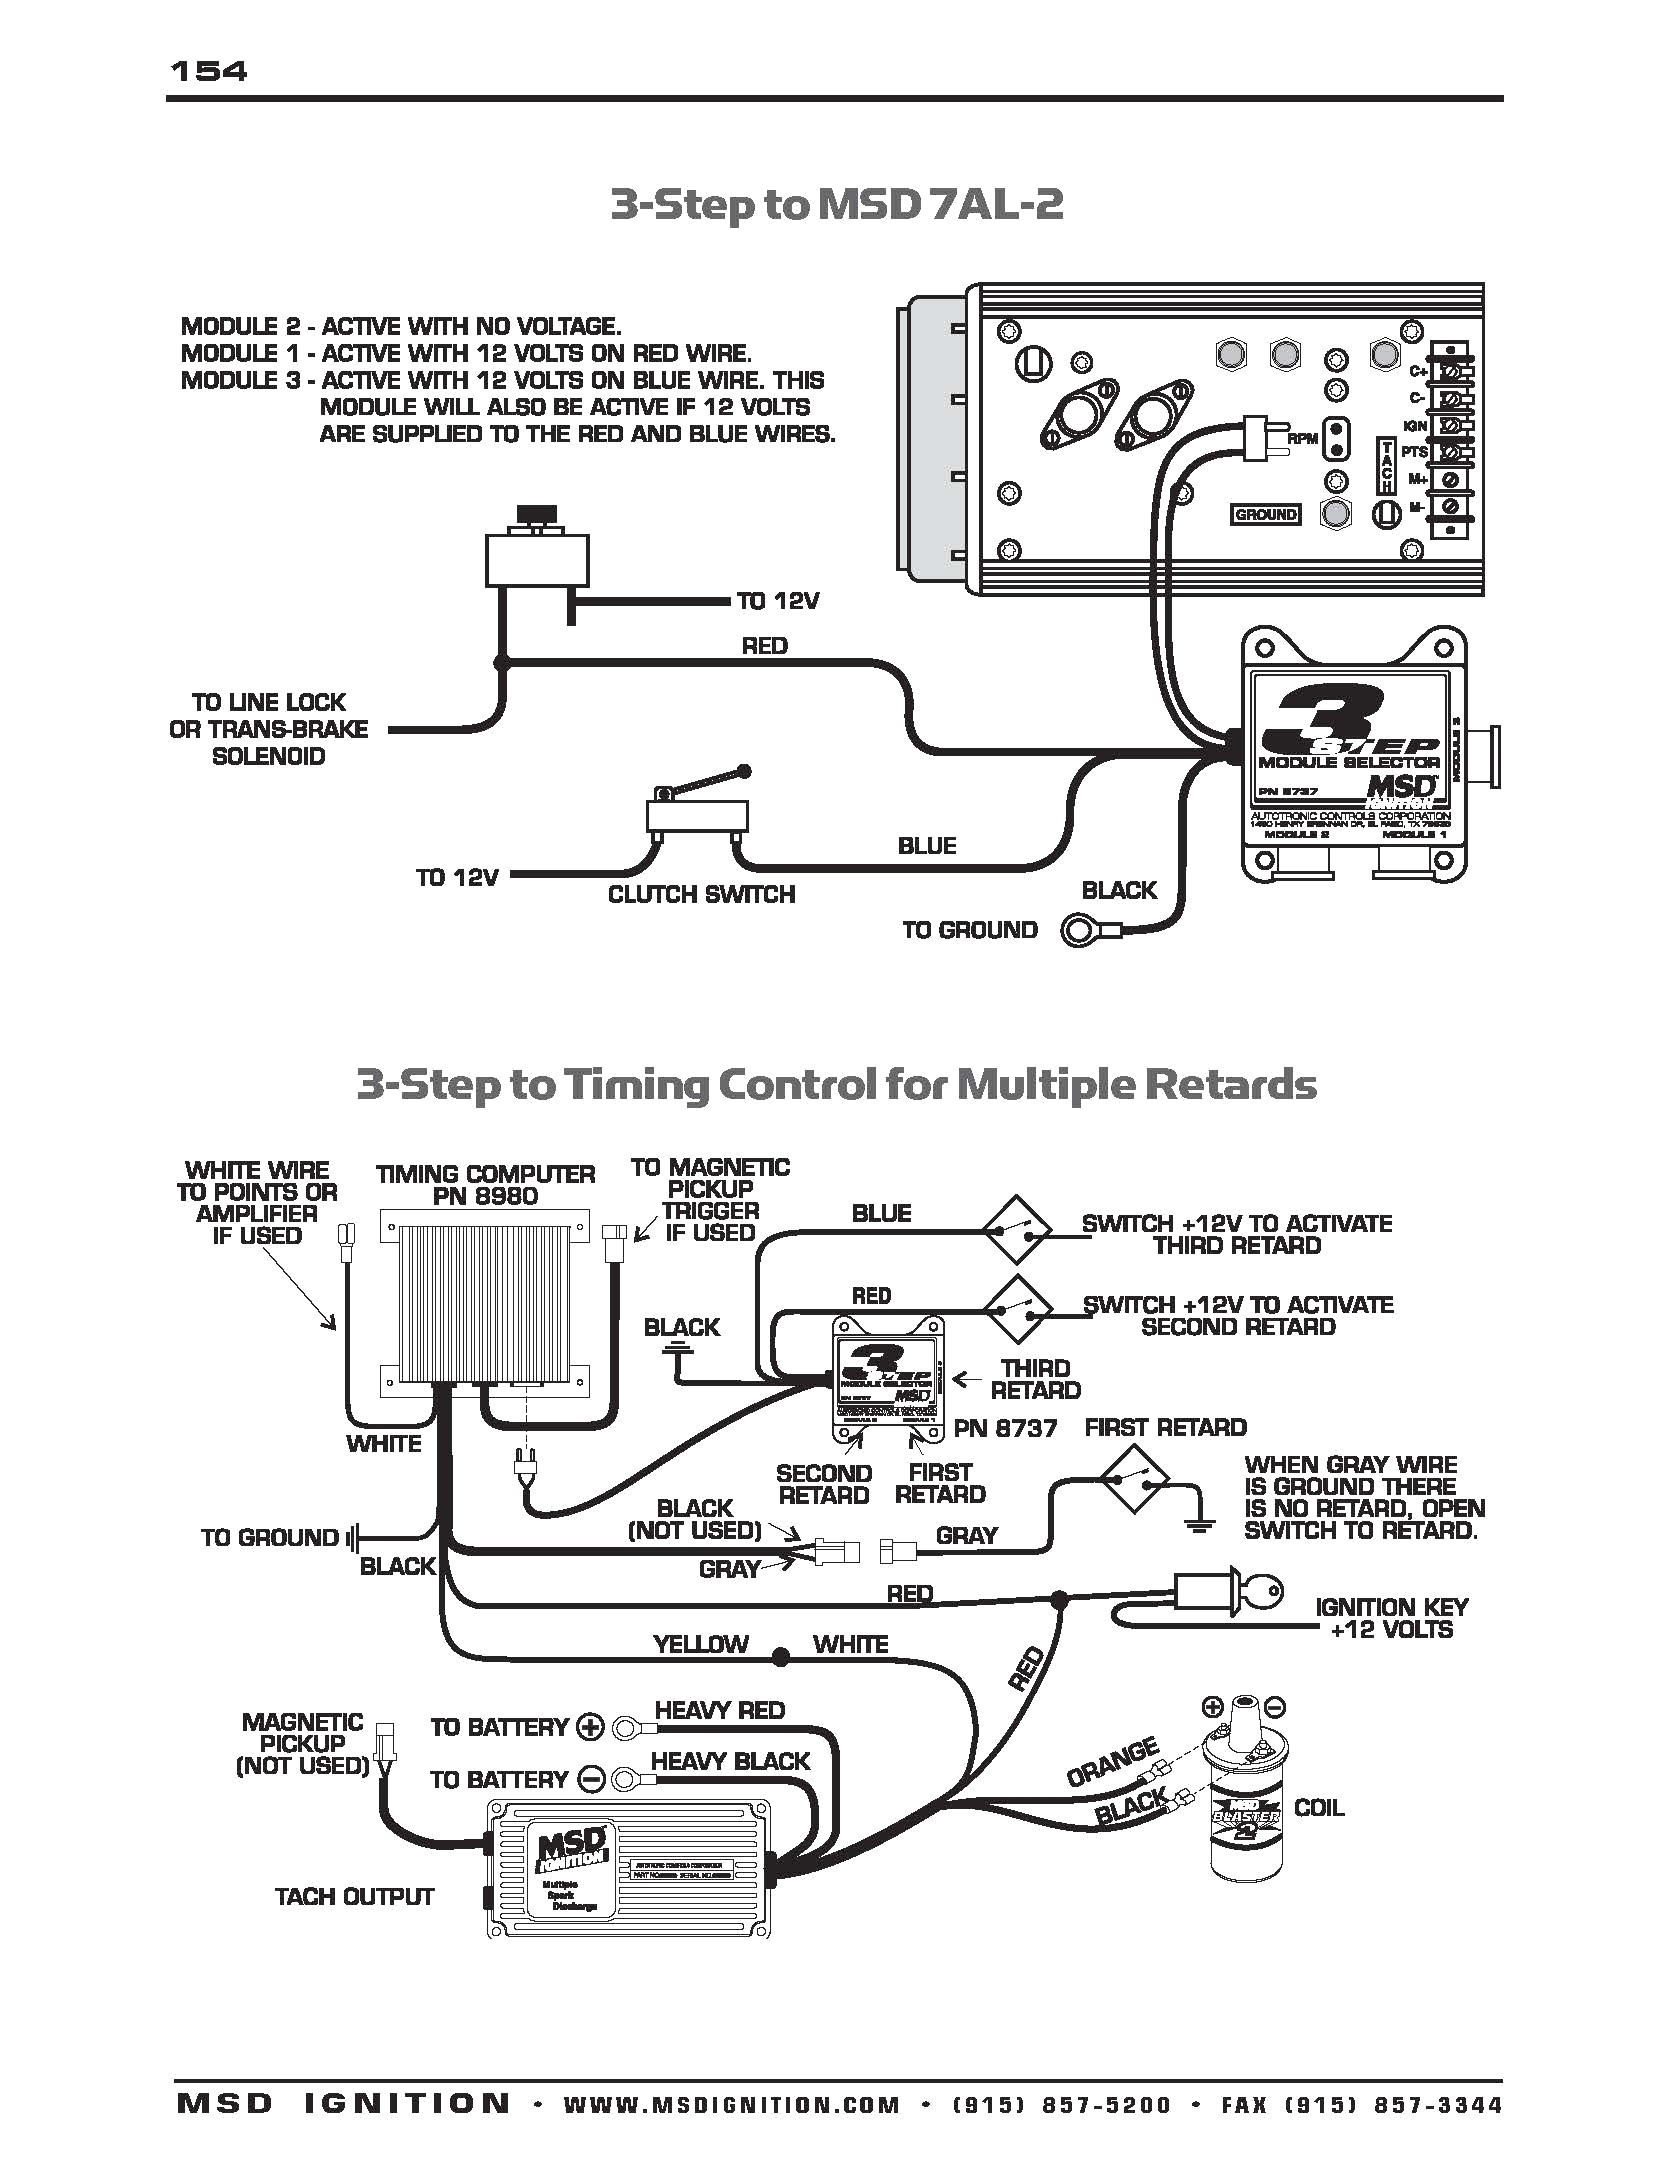 msd grid ignition wiring diagram schematic diagrams with ignition system wiring diagram